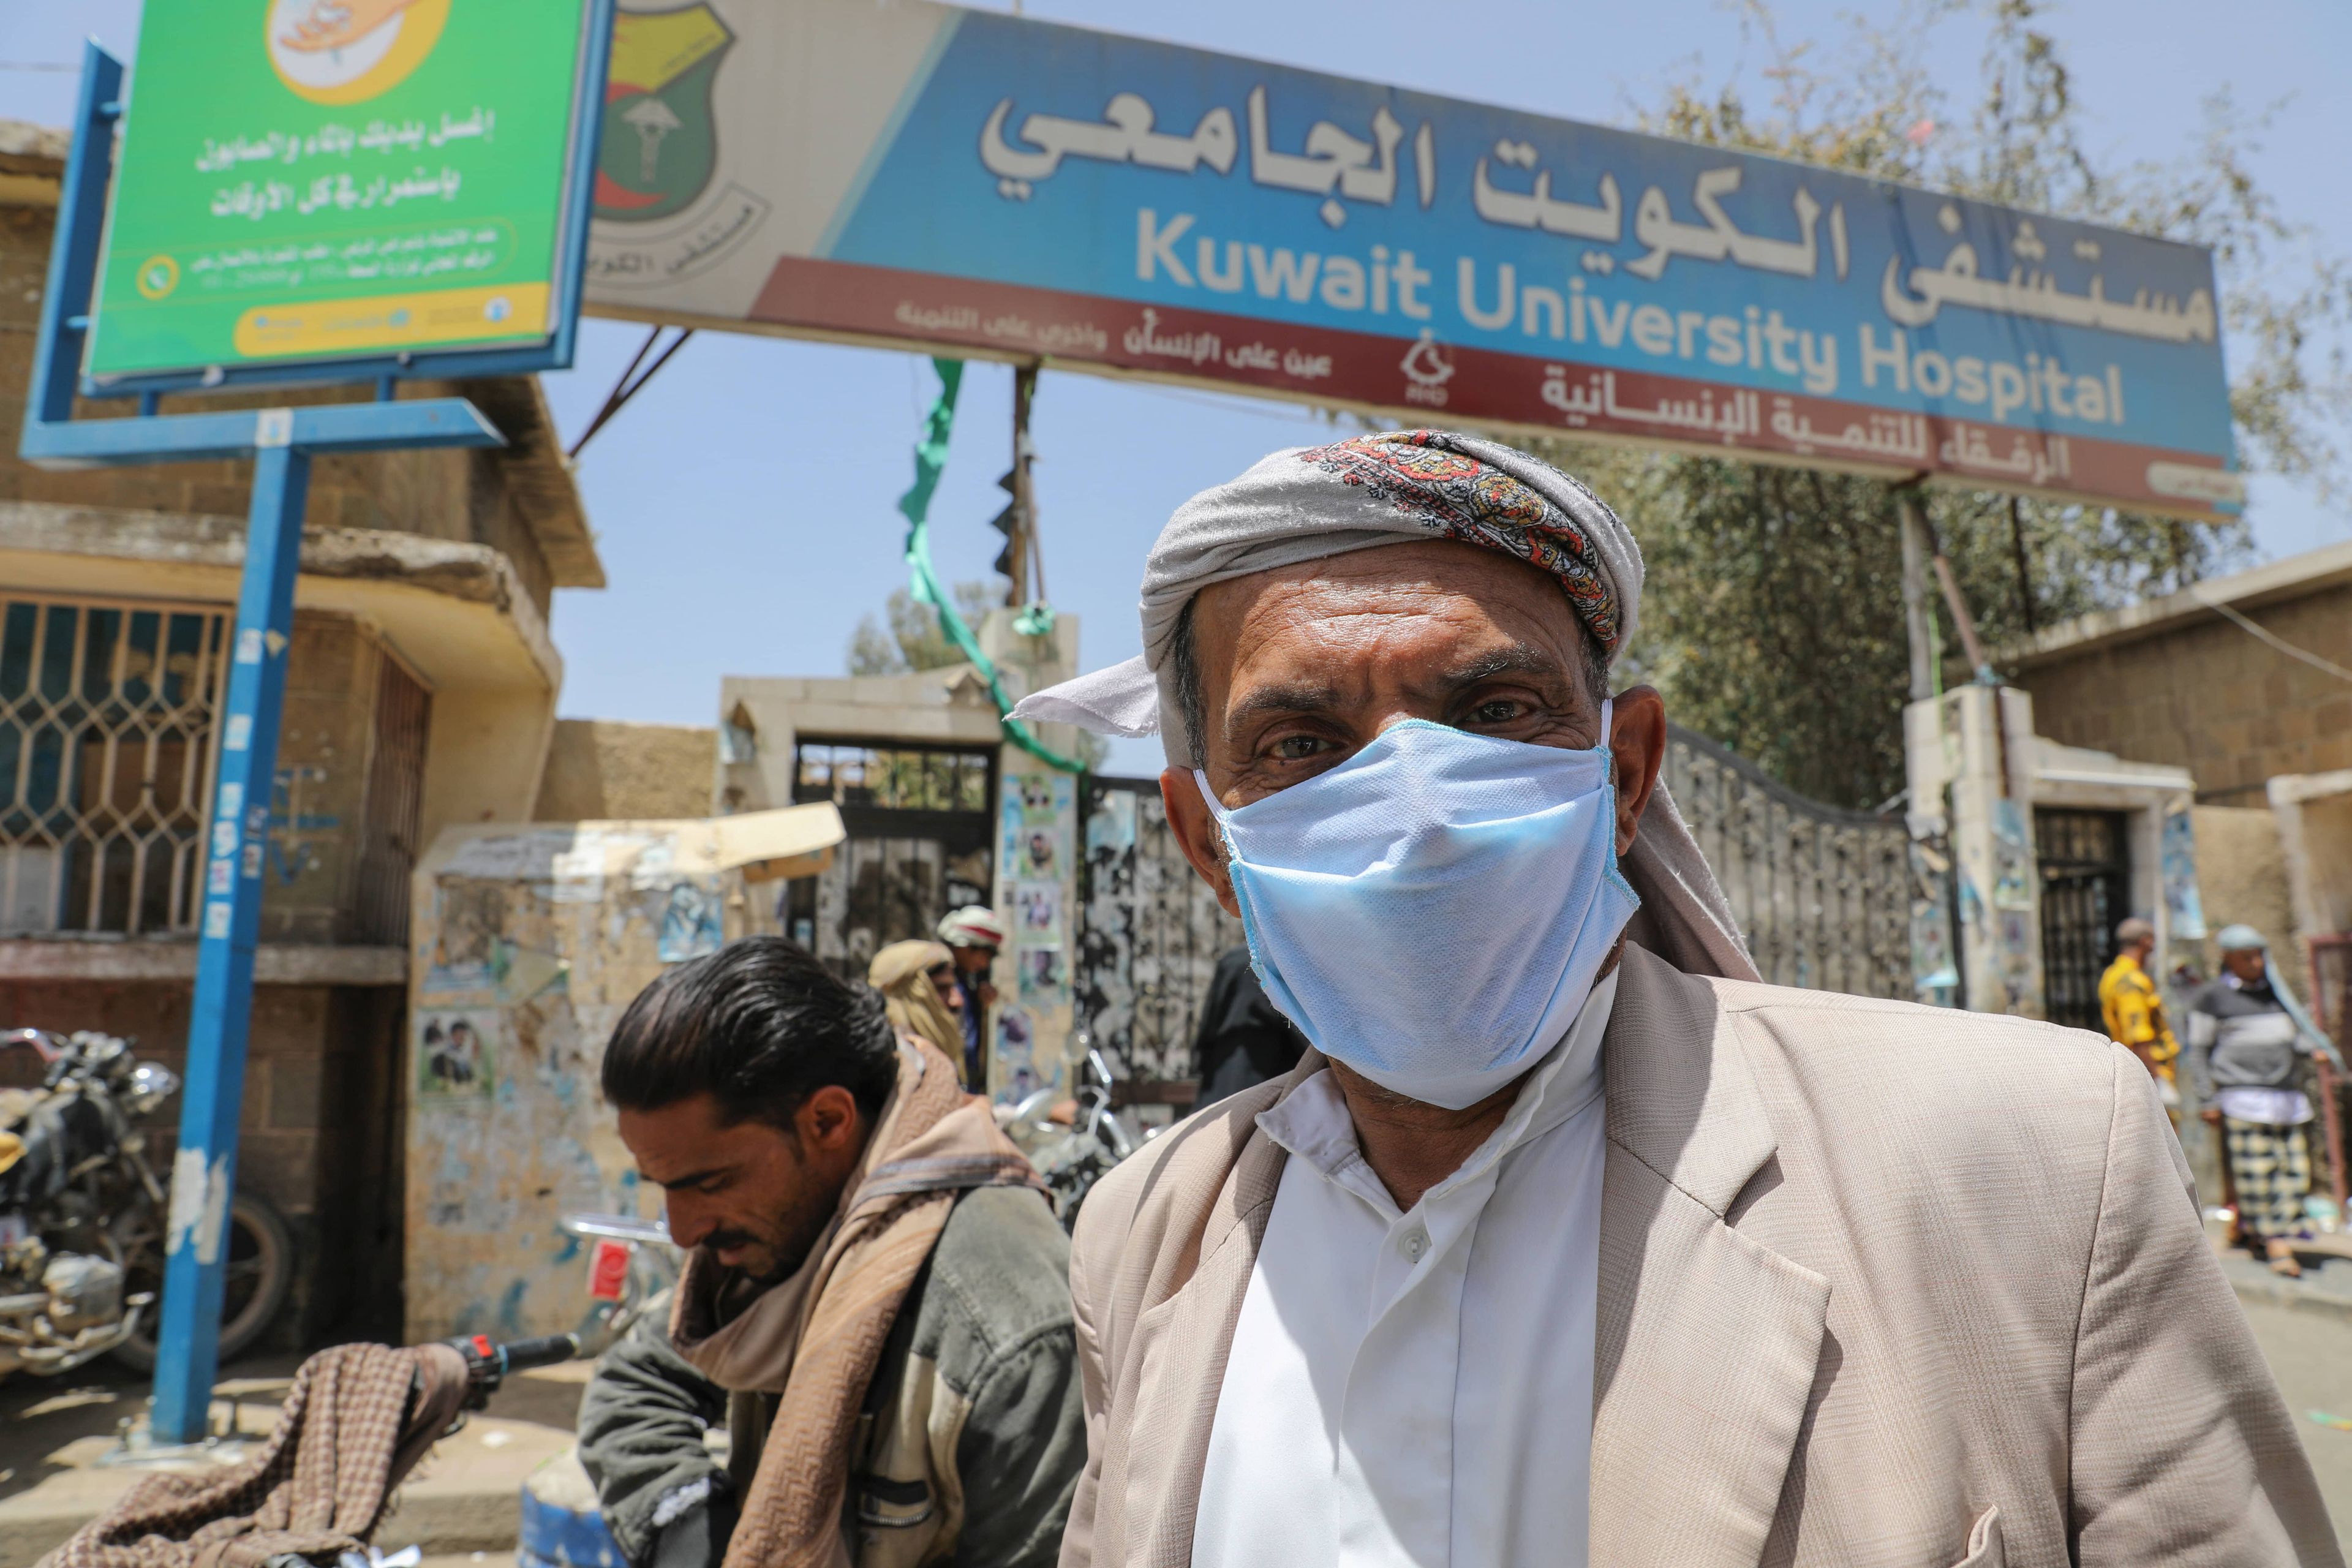 Hombre en Yemen llevando una mascarilla para evitar el contagio por coronavirus.